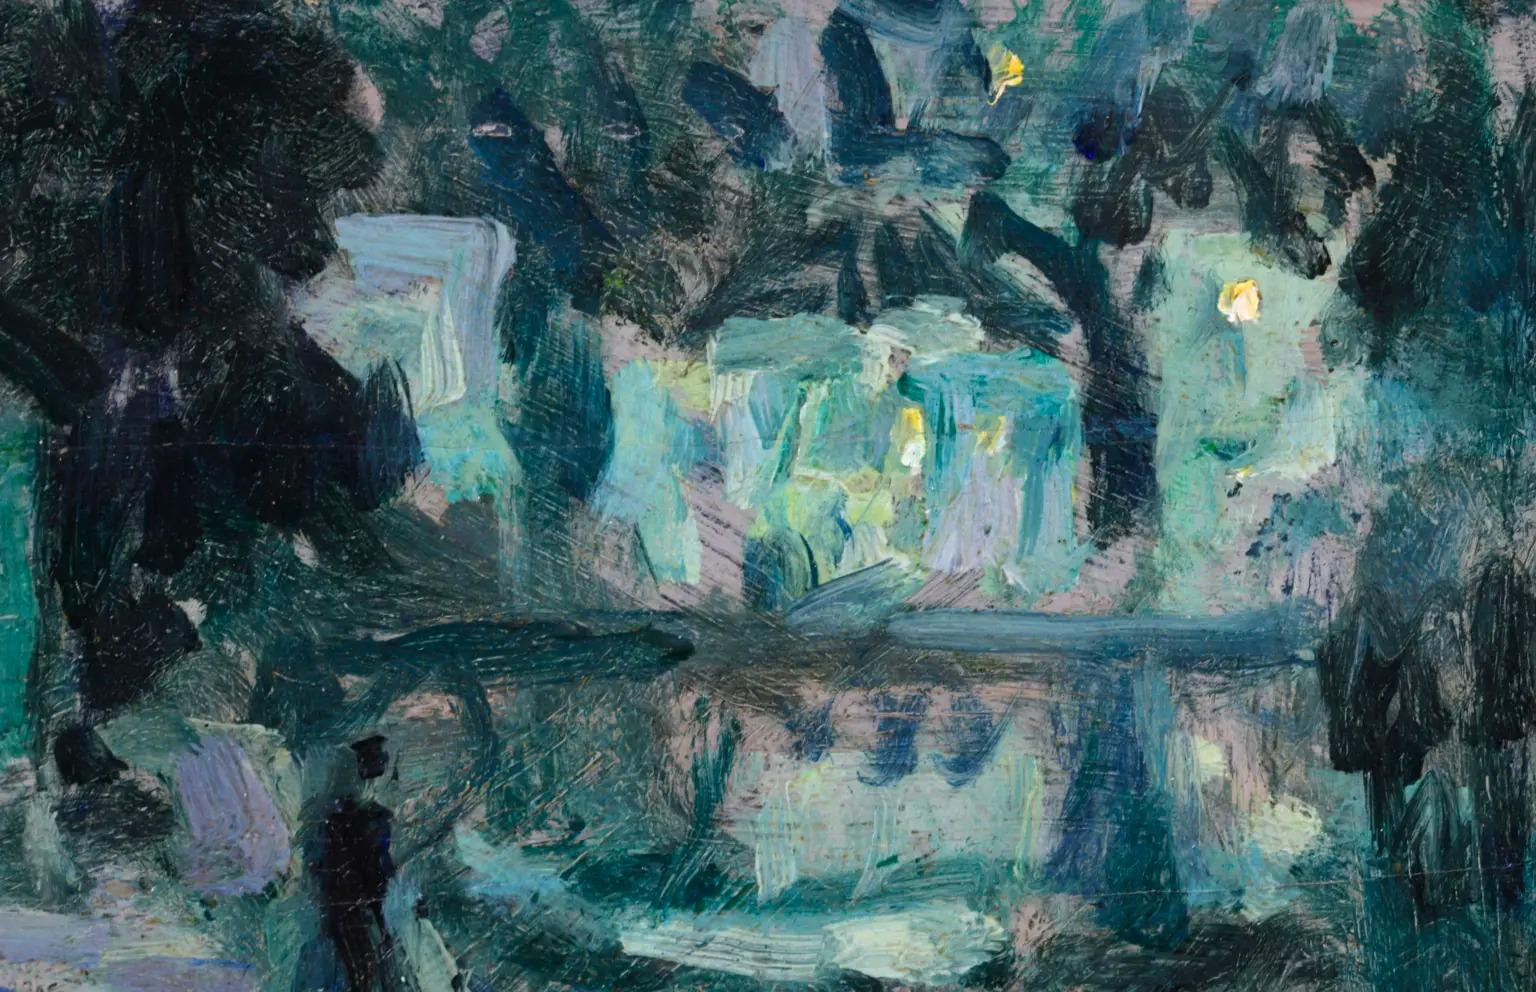 Clair de lune, Quimperle - Post Impressionist Landscape by Henri Le Sidaner 1